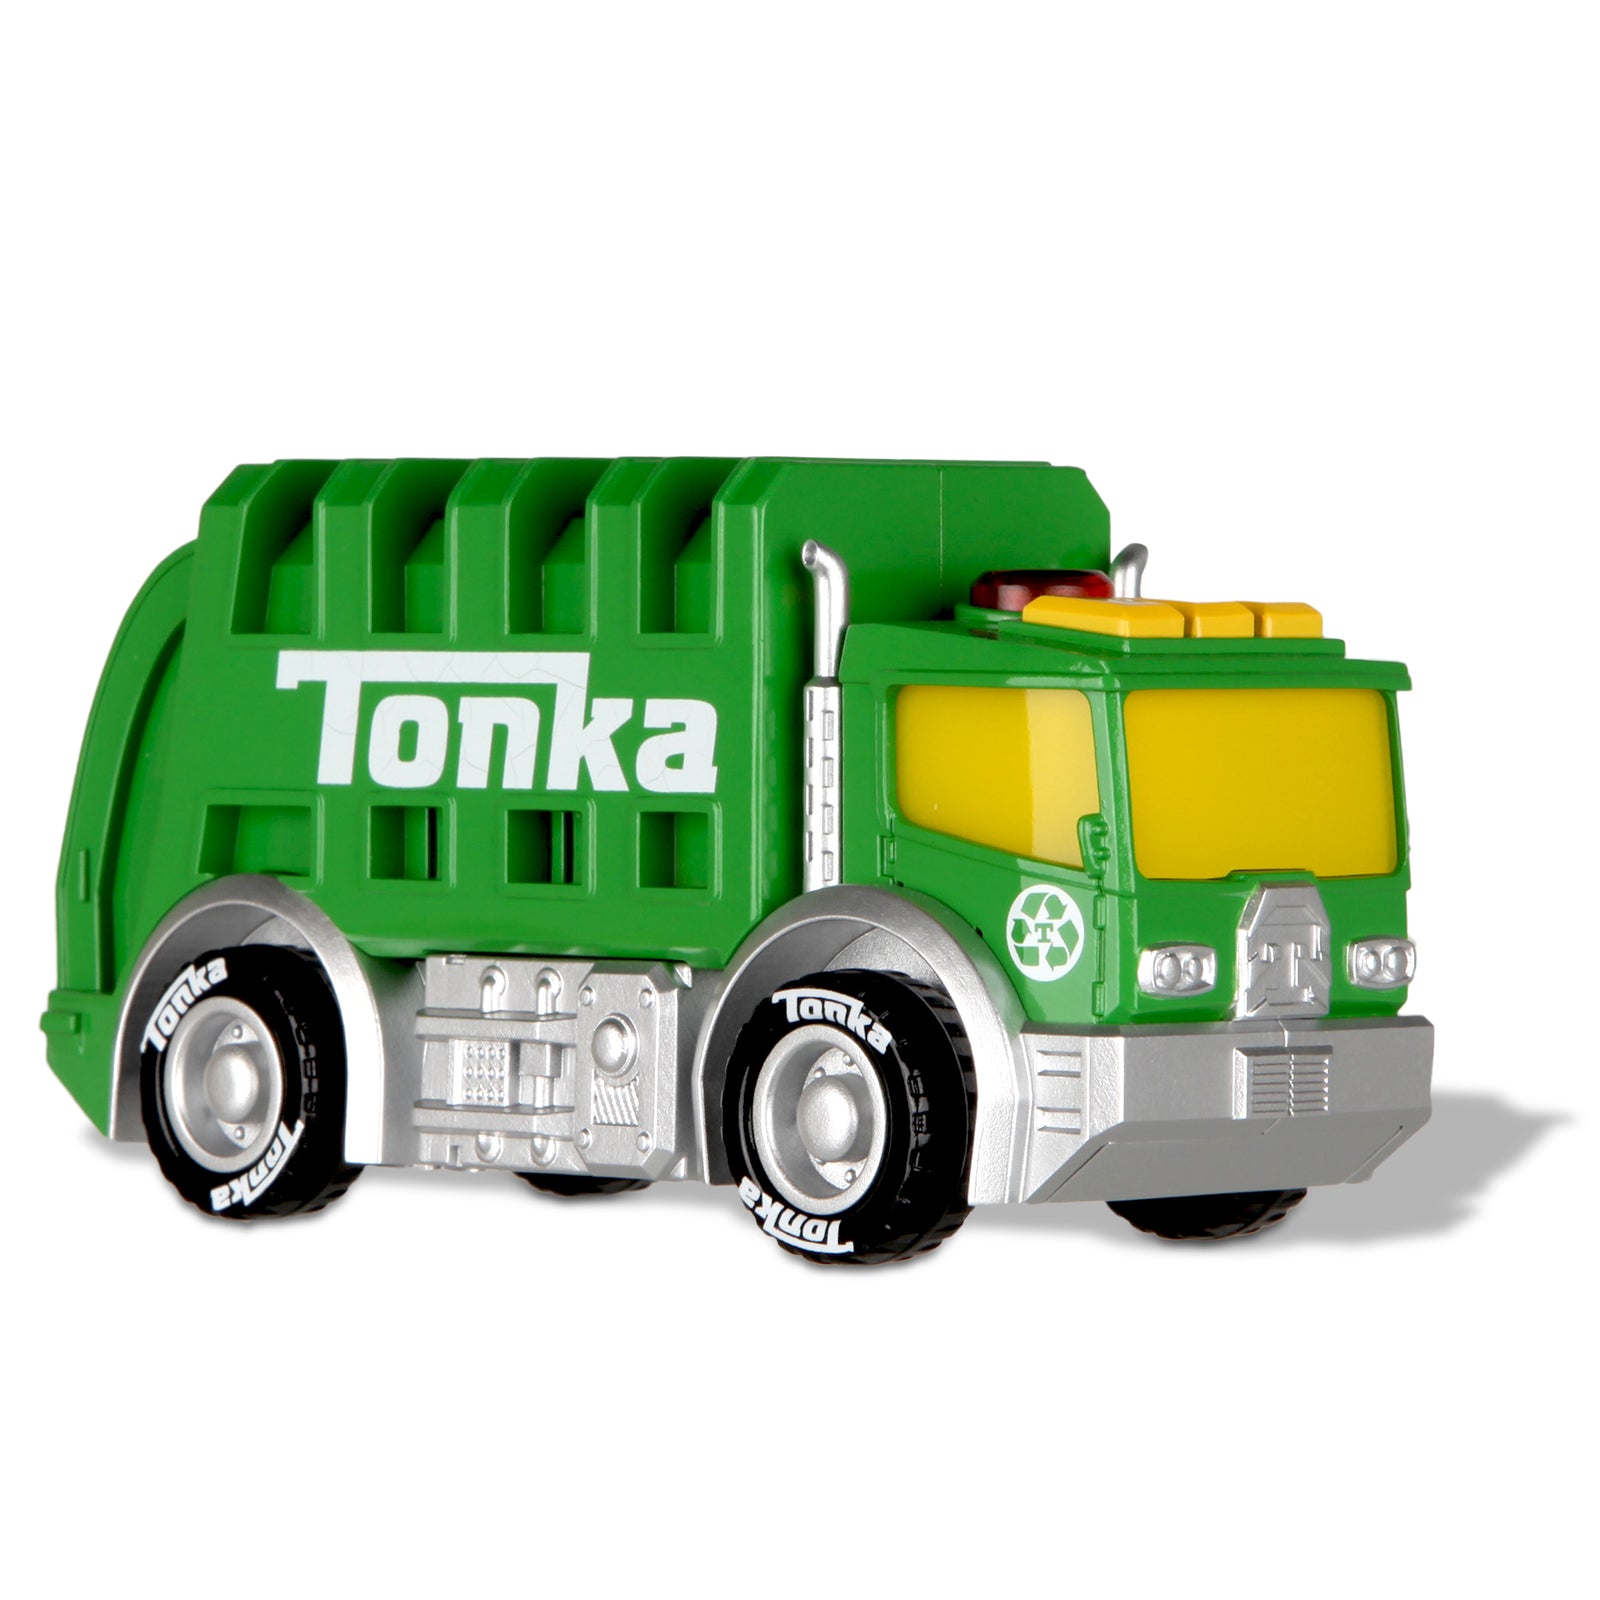 Tonka: Mighty Machines - Garbage Truck